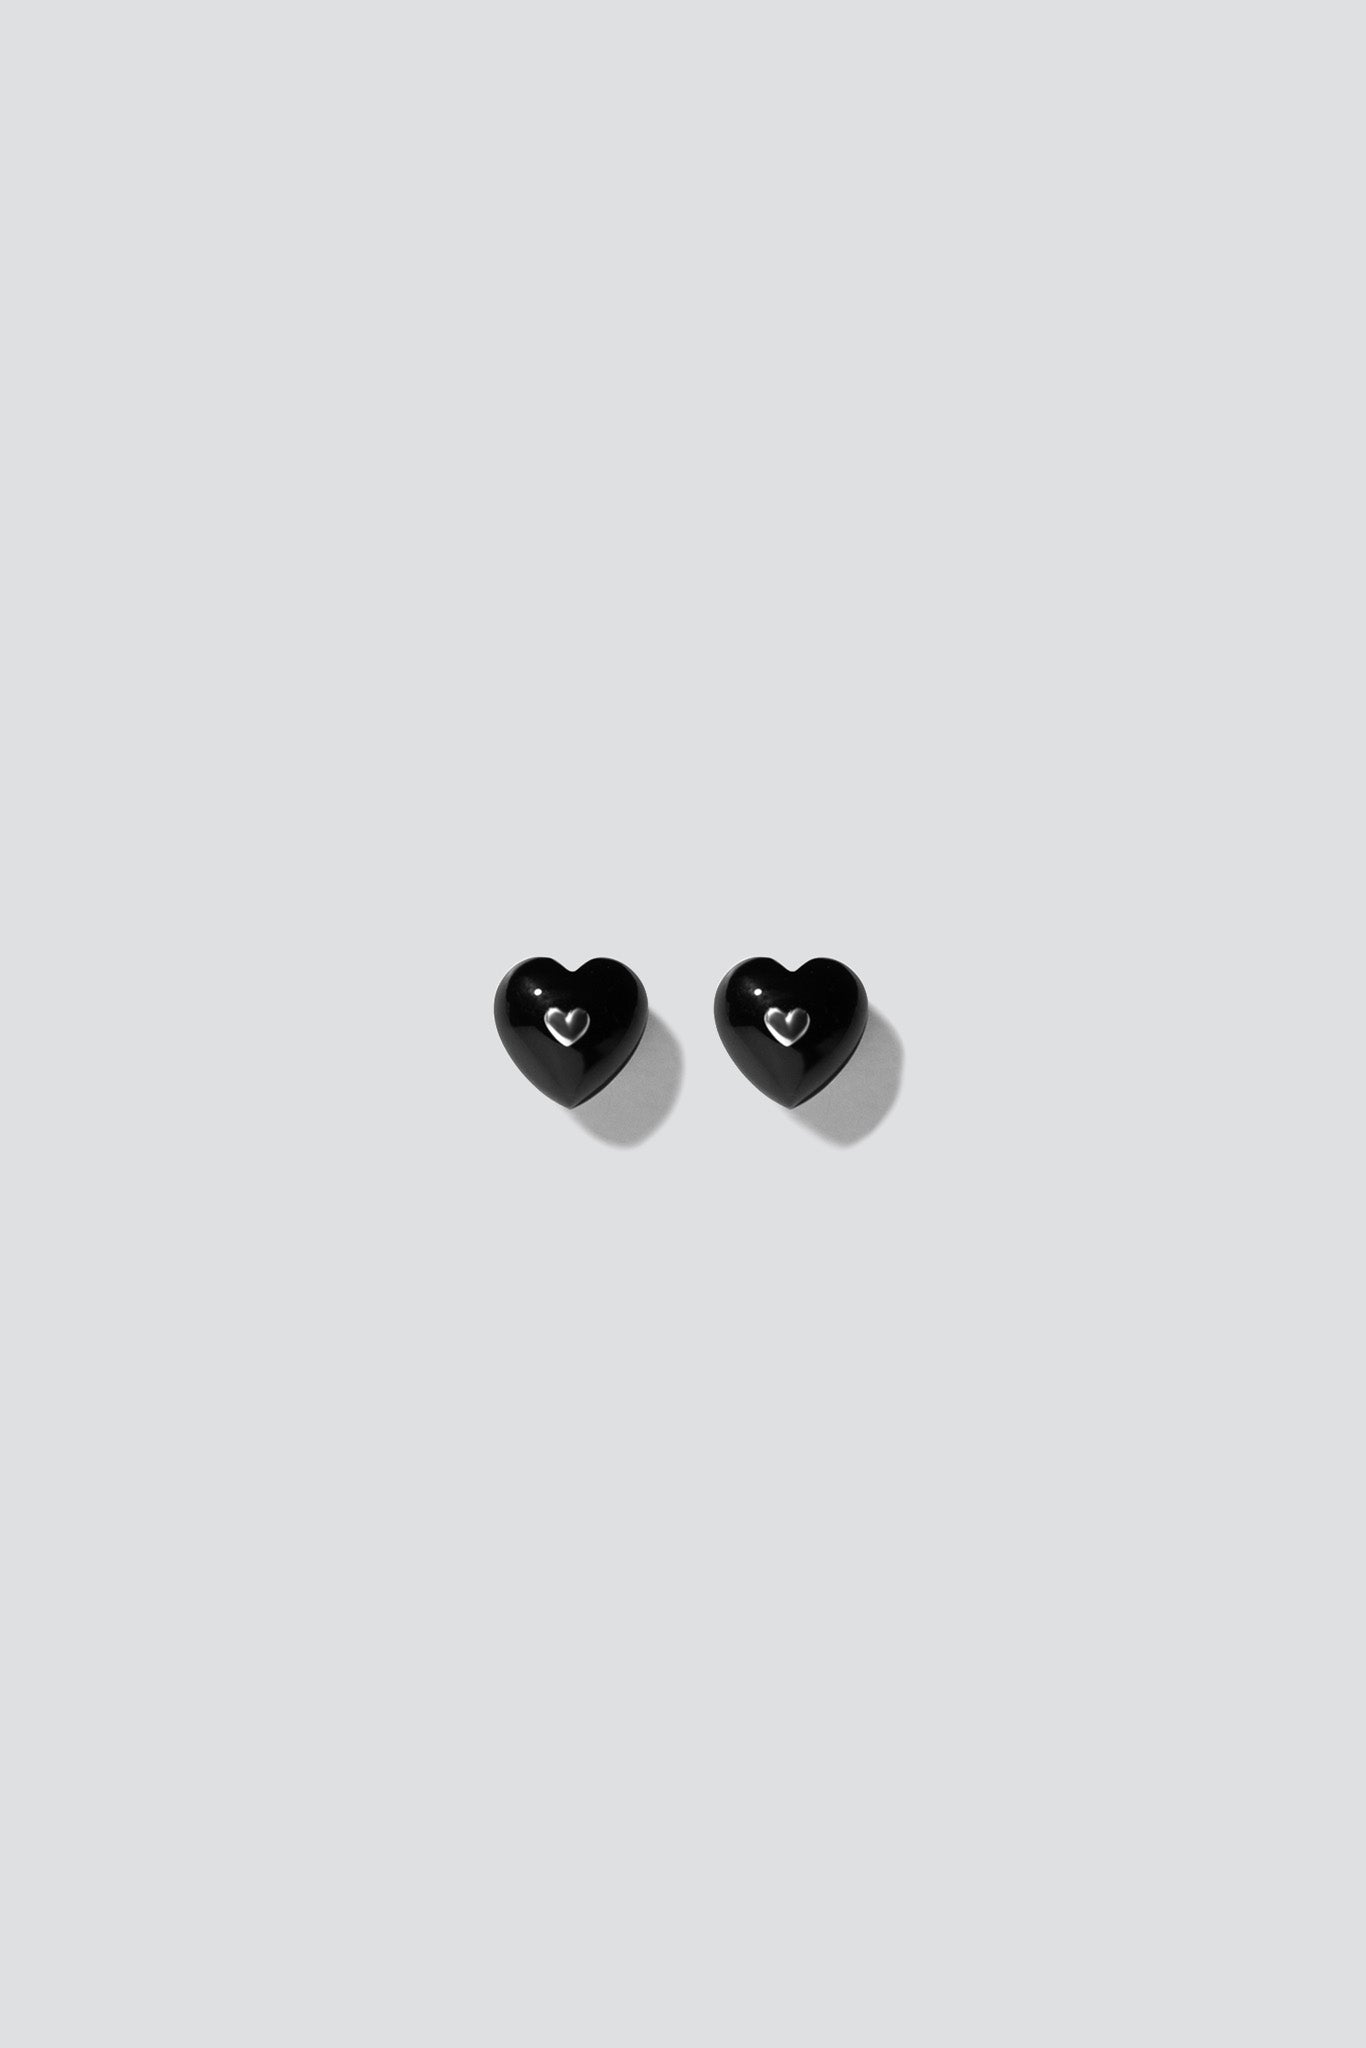 Very Vintage Black Onyx Heart Earrings